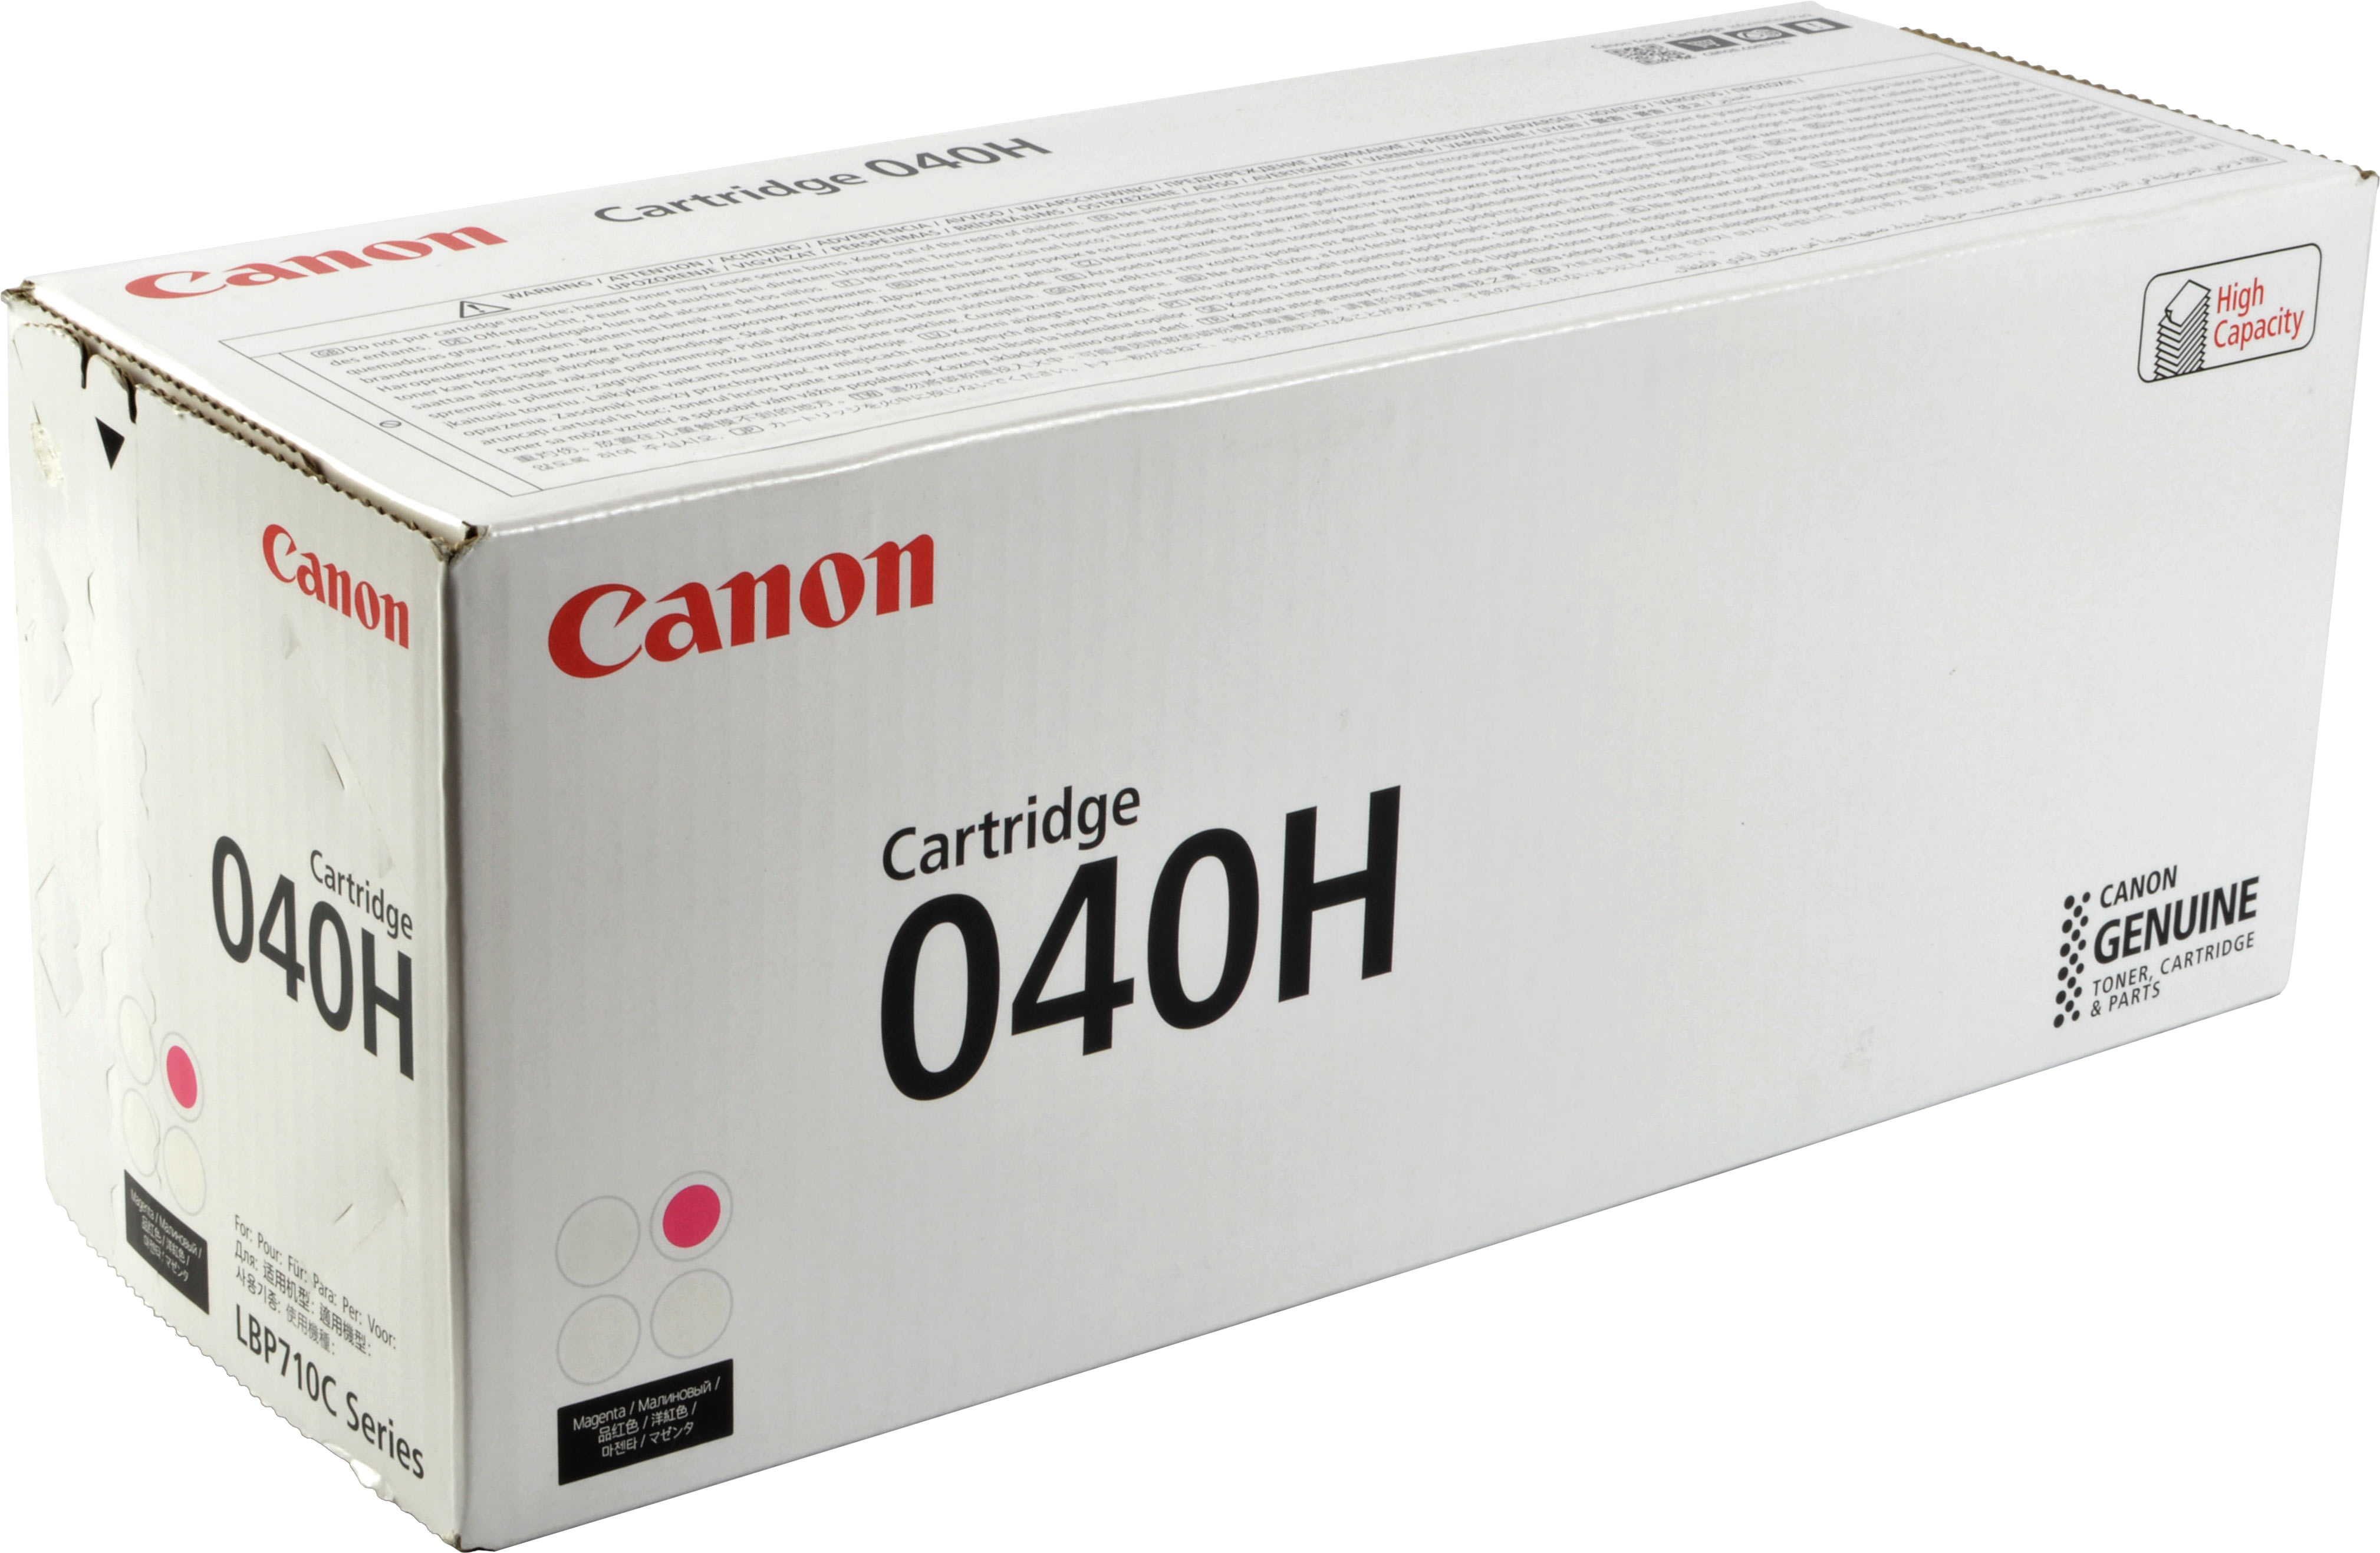 Canon Toner 0457C001  040H  magenta